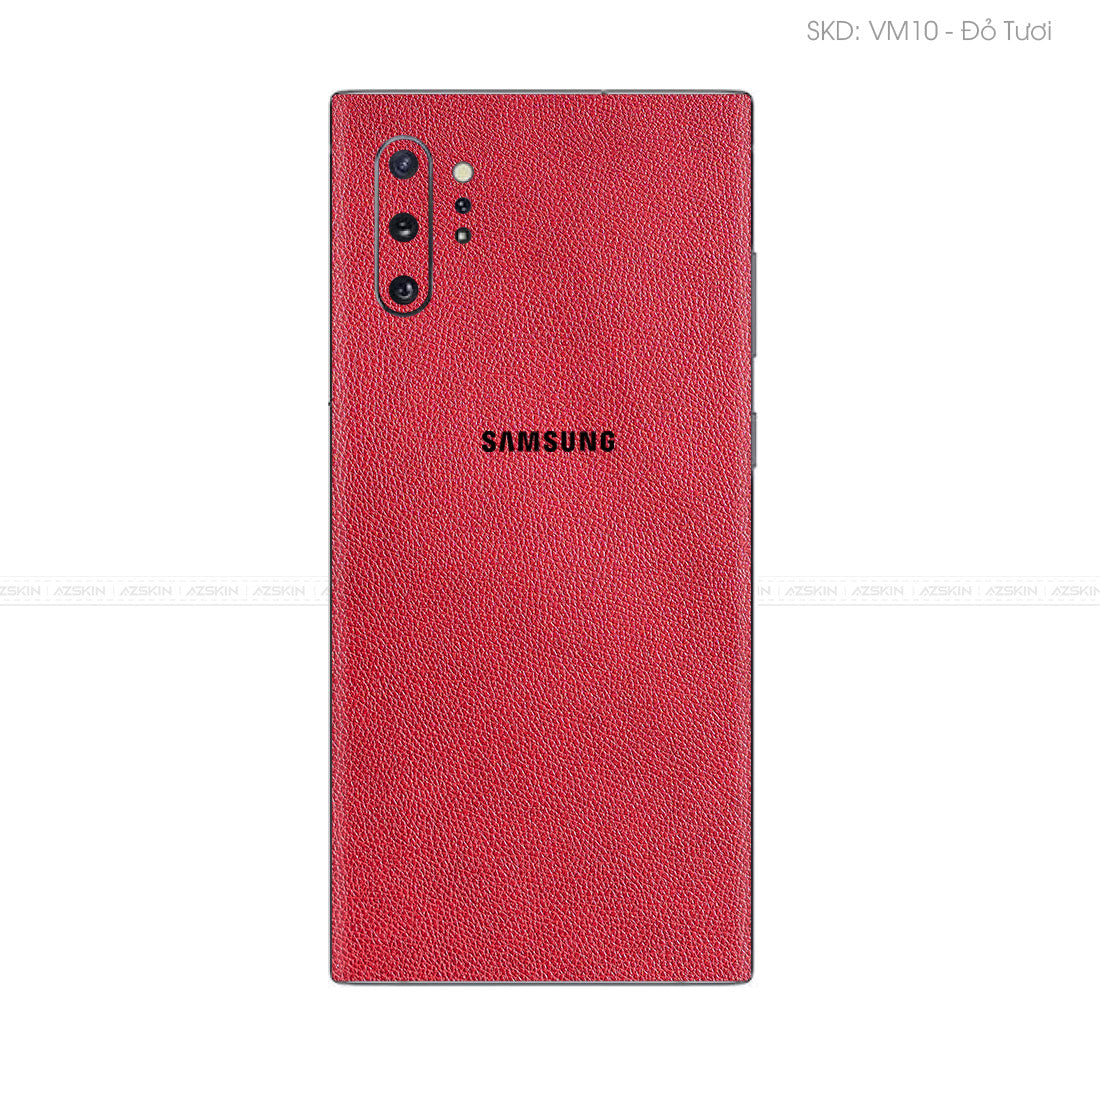 Miếng Dán Da Samsung Note 10 Series Vân Mil Đỏ | VM10